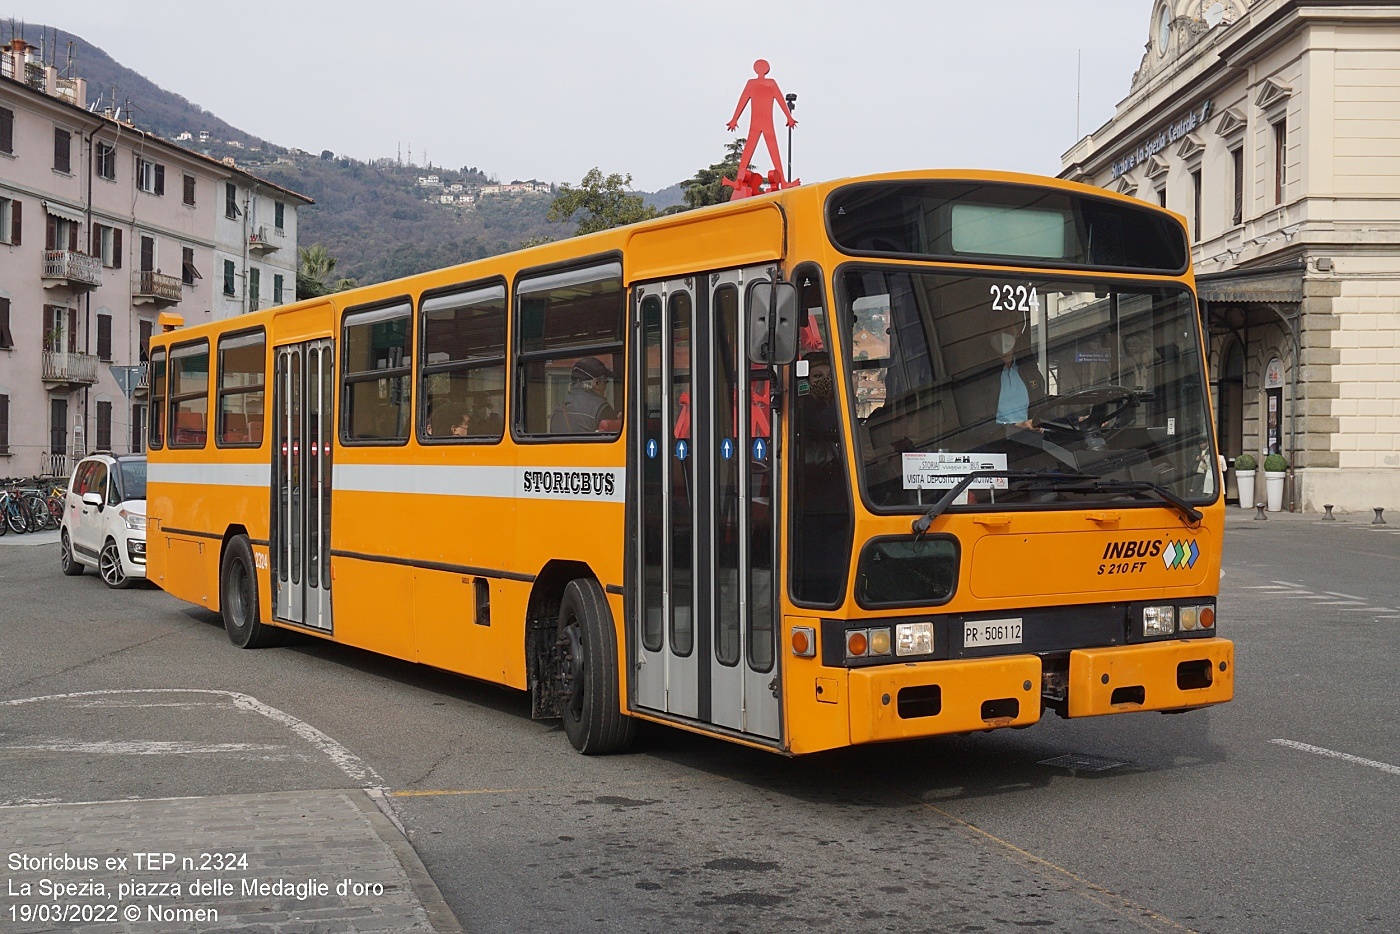 Siccar 177/4LS / Inbus S210-FT #PR 506112